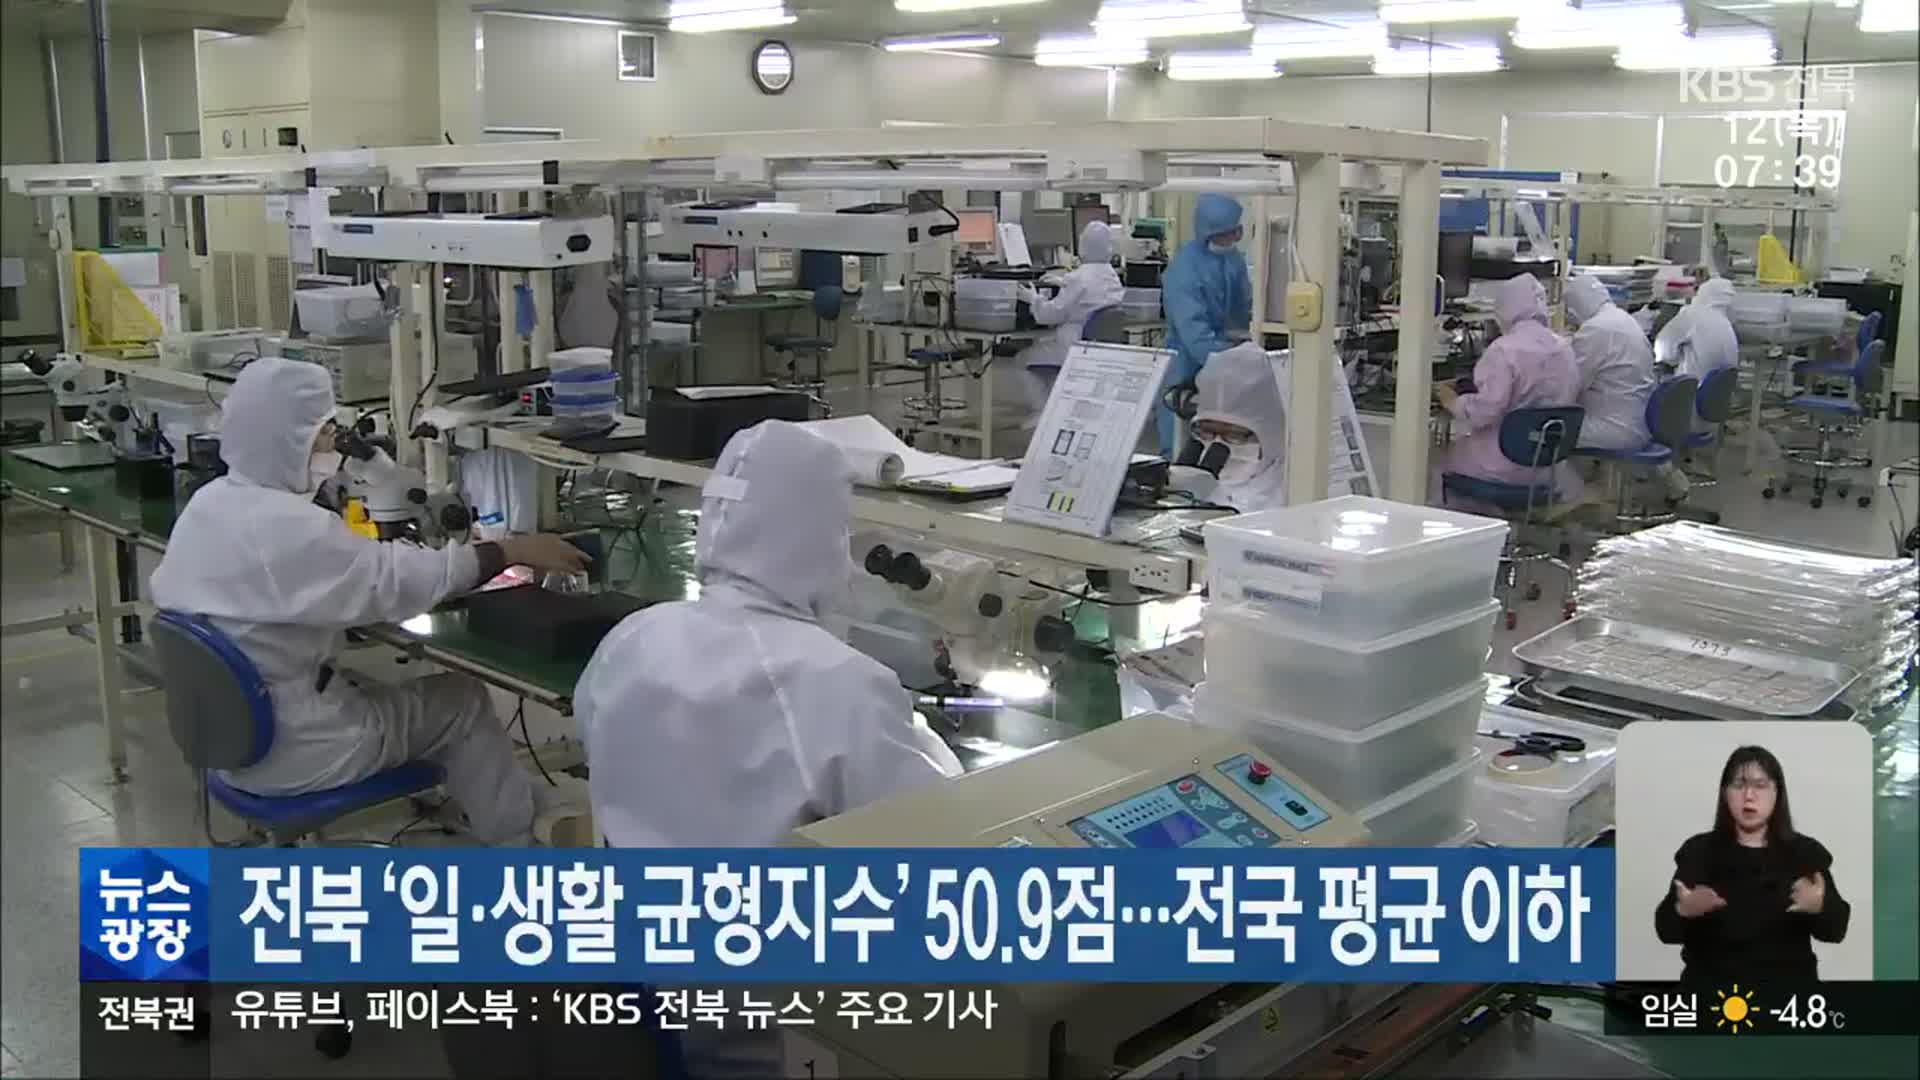 전북 ‘일·생활 균형지수’ 50.9점…전국 평균 이하